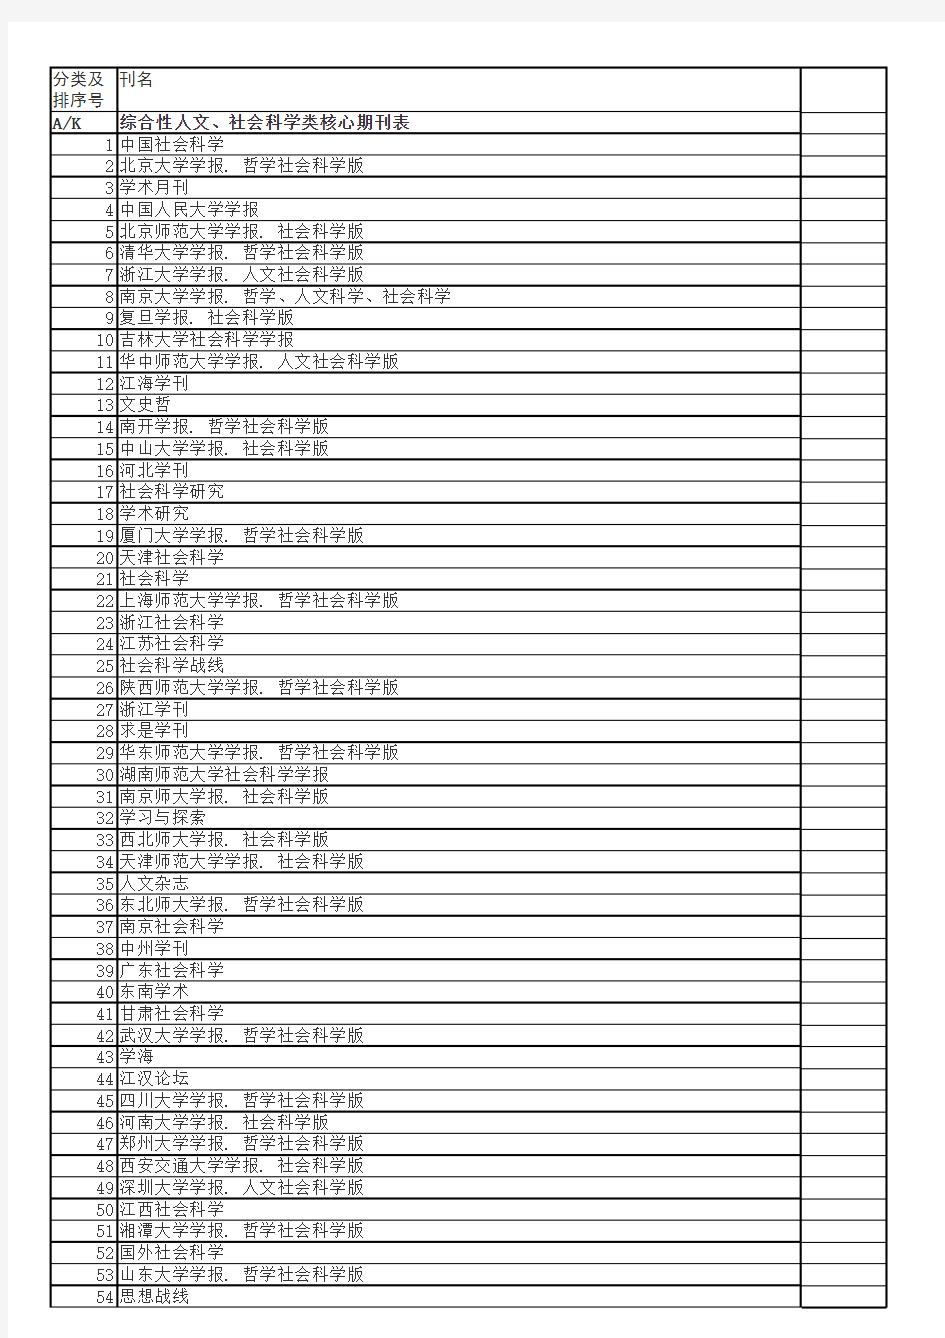 《中文核心期刊要目总览(2011年版)》分类表